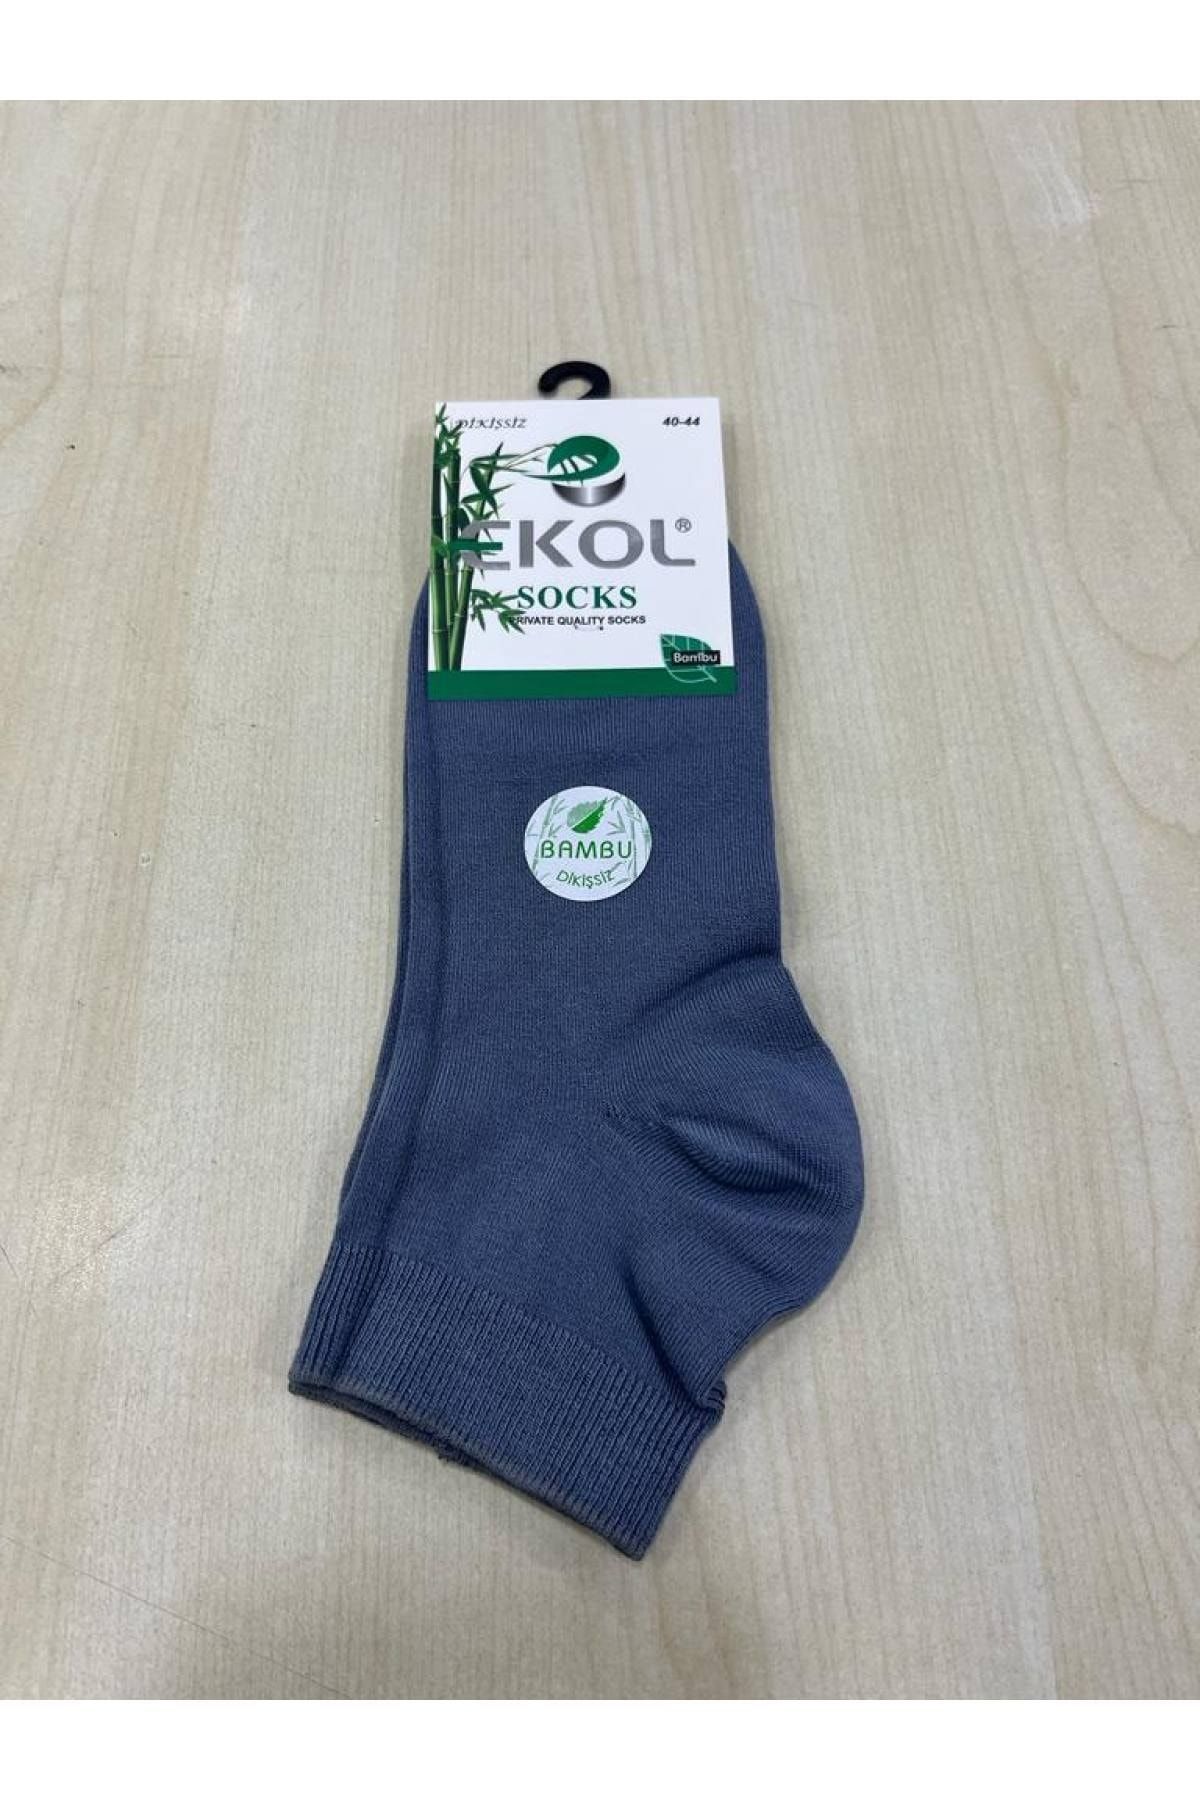 EKOL SOCK'S Erkek Açık Gri Bambu 6'lı Patik Çorap